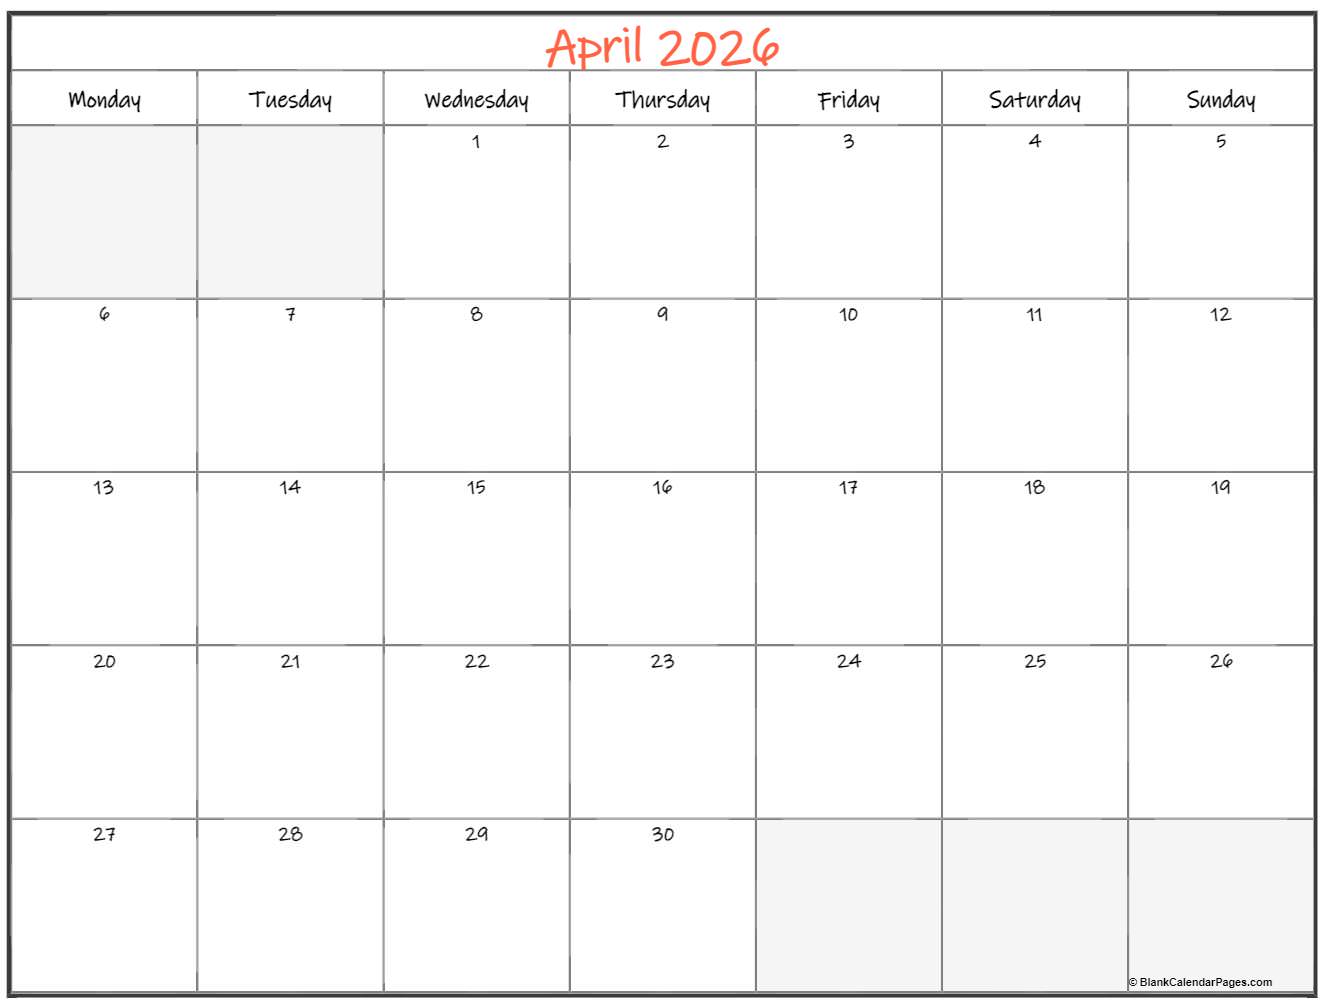 April 2026 Monday calendar. Monday to Sunday